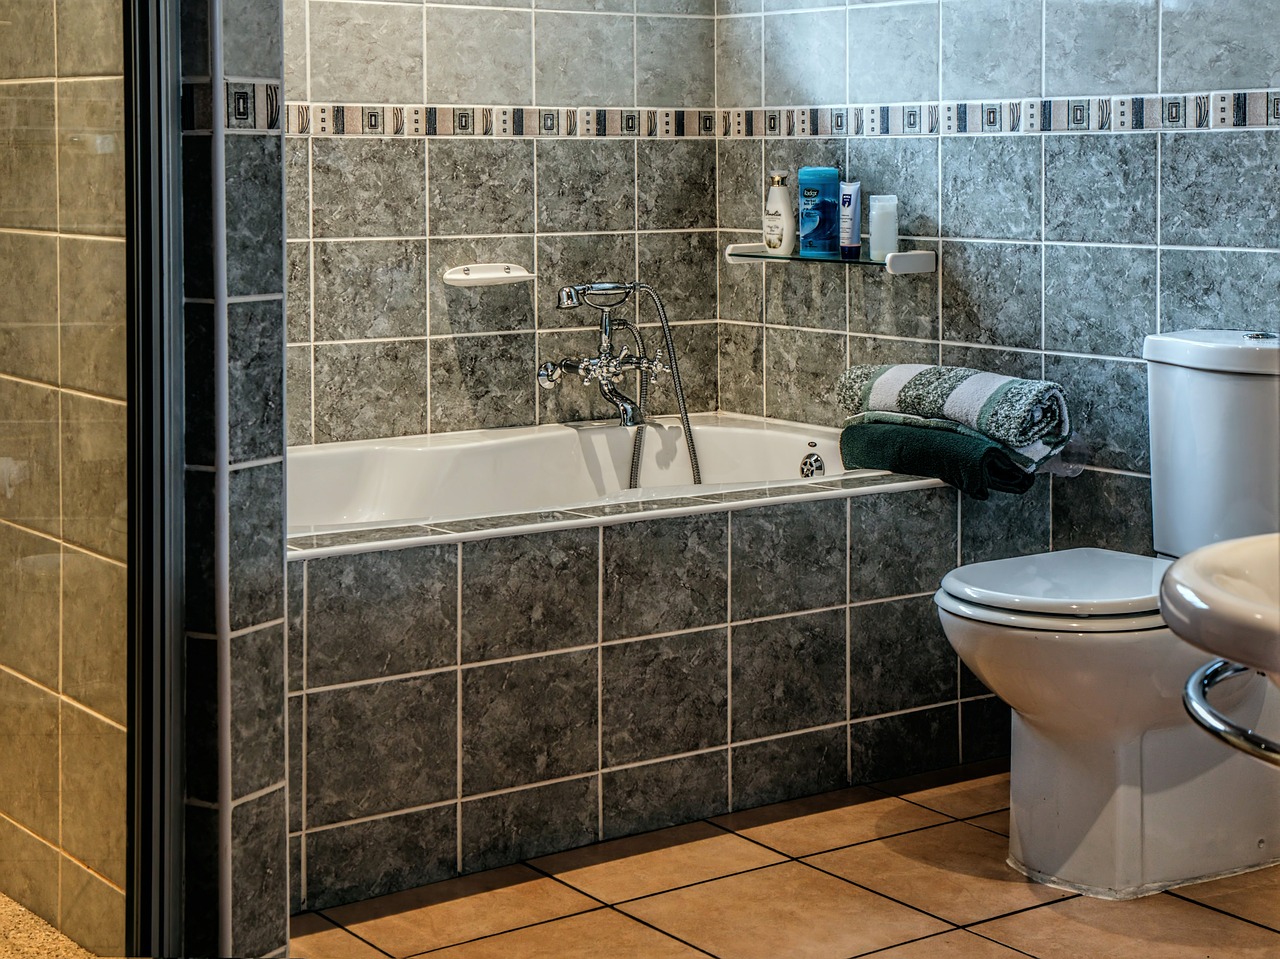 W nowoczesnych łazienkach zamiast tradycyjnych modeli coraz częściej stosowane są bezkołnierzowe toalety i bezbrodzikowe kabiny